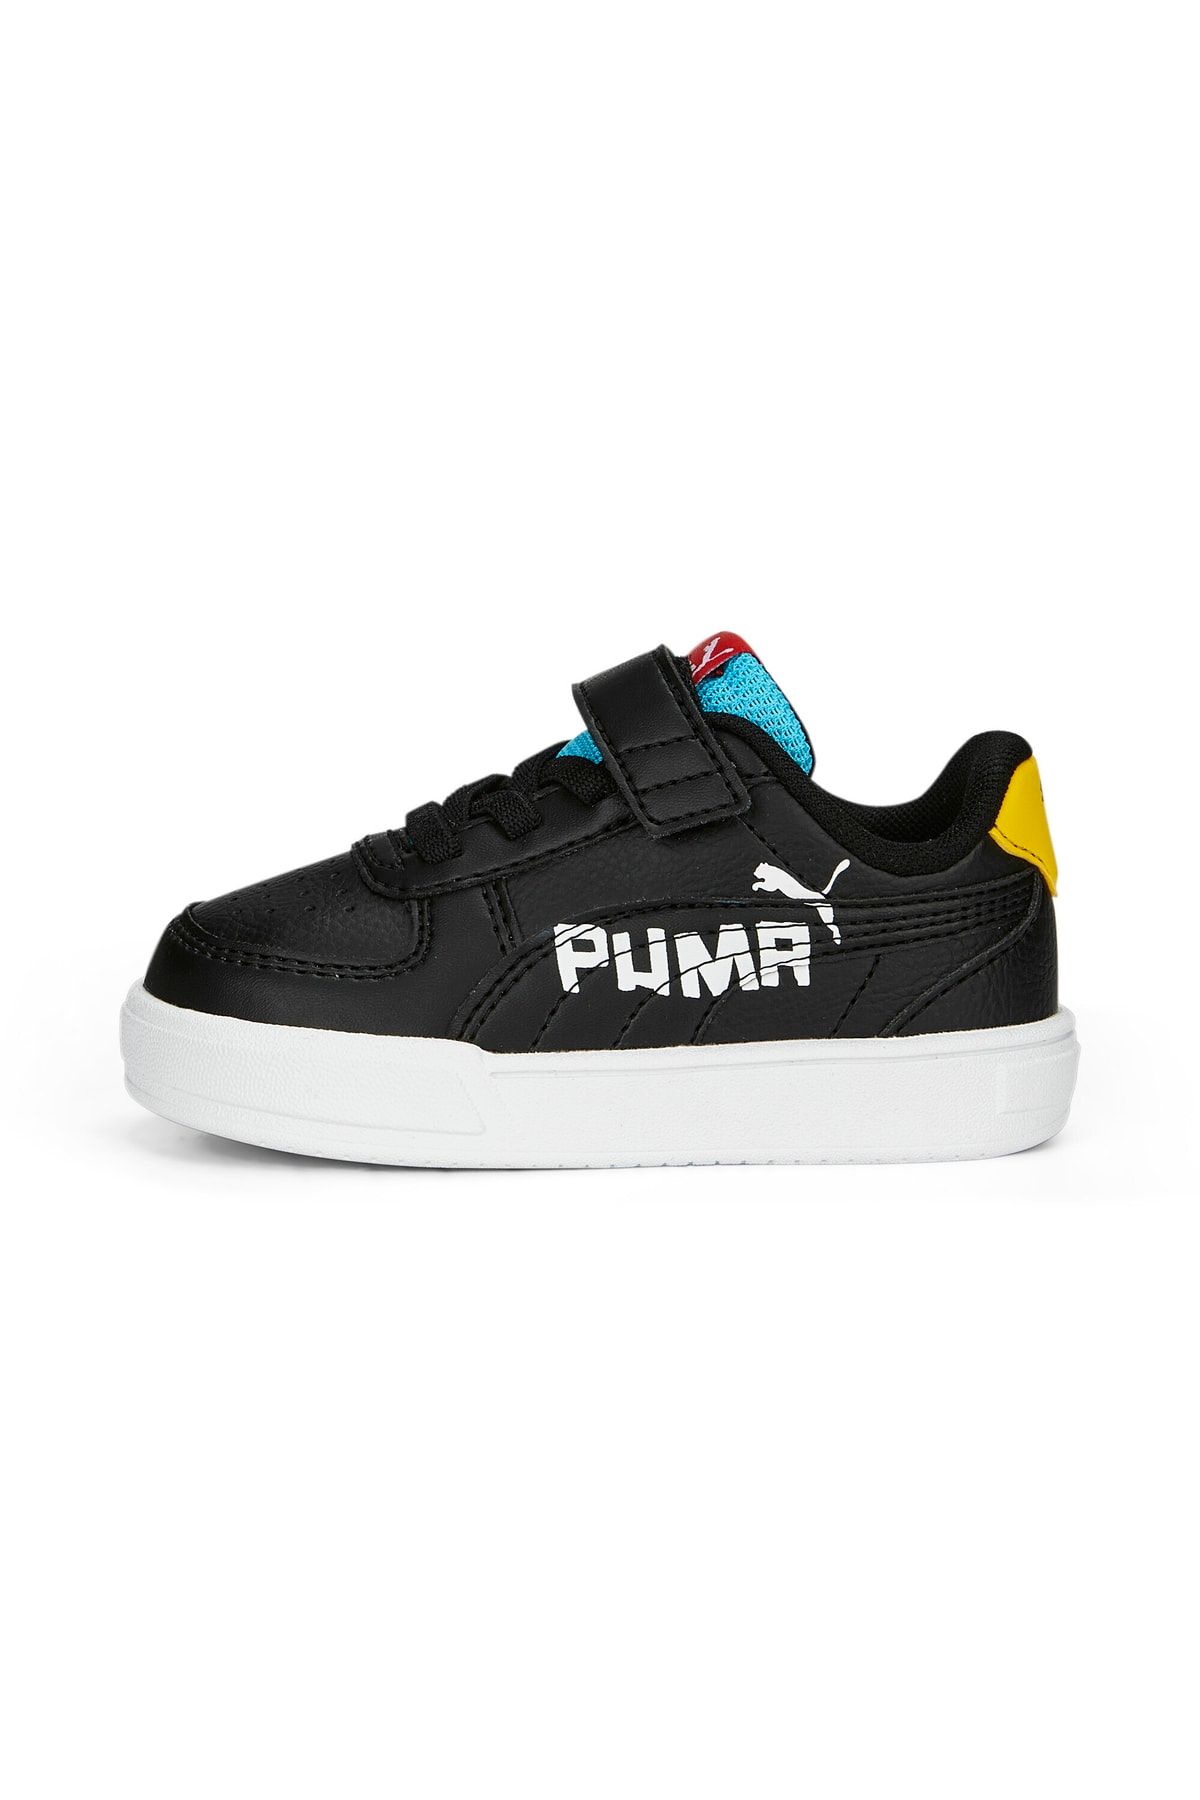 Puma Caven Brand Love AC+ Inf - Siyah Bebek Spor Ayakkabı